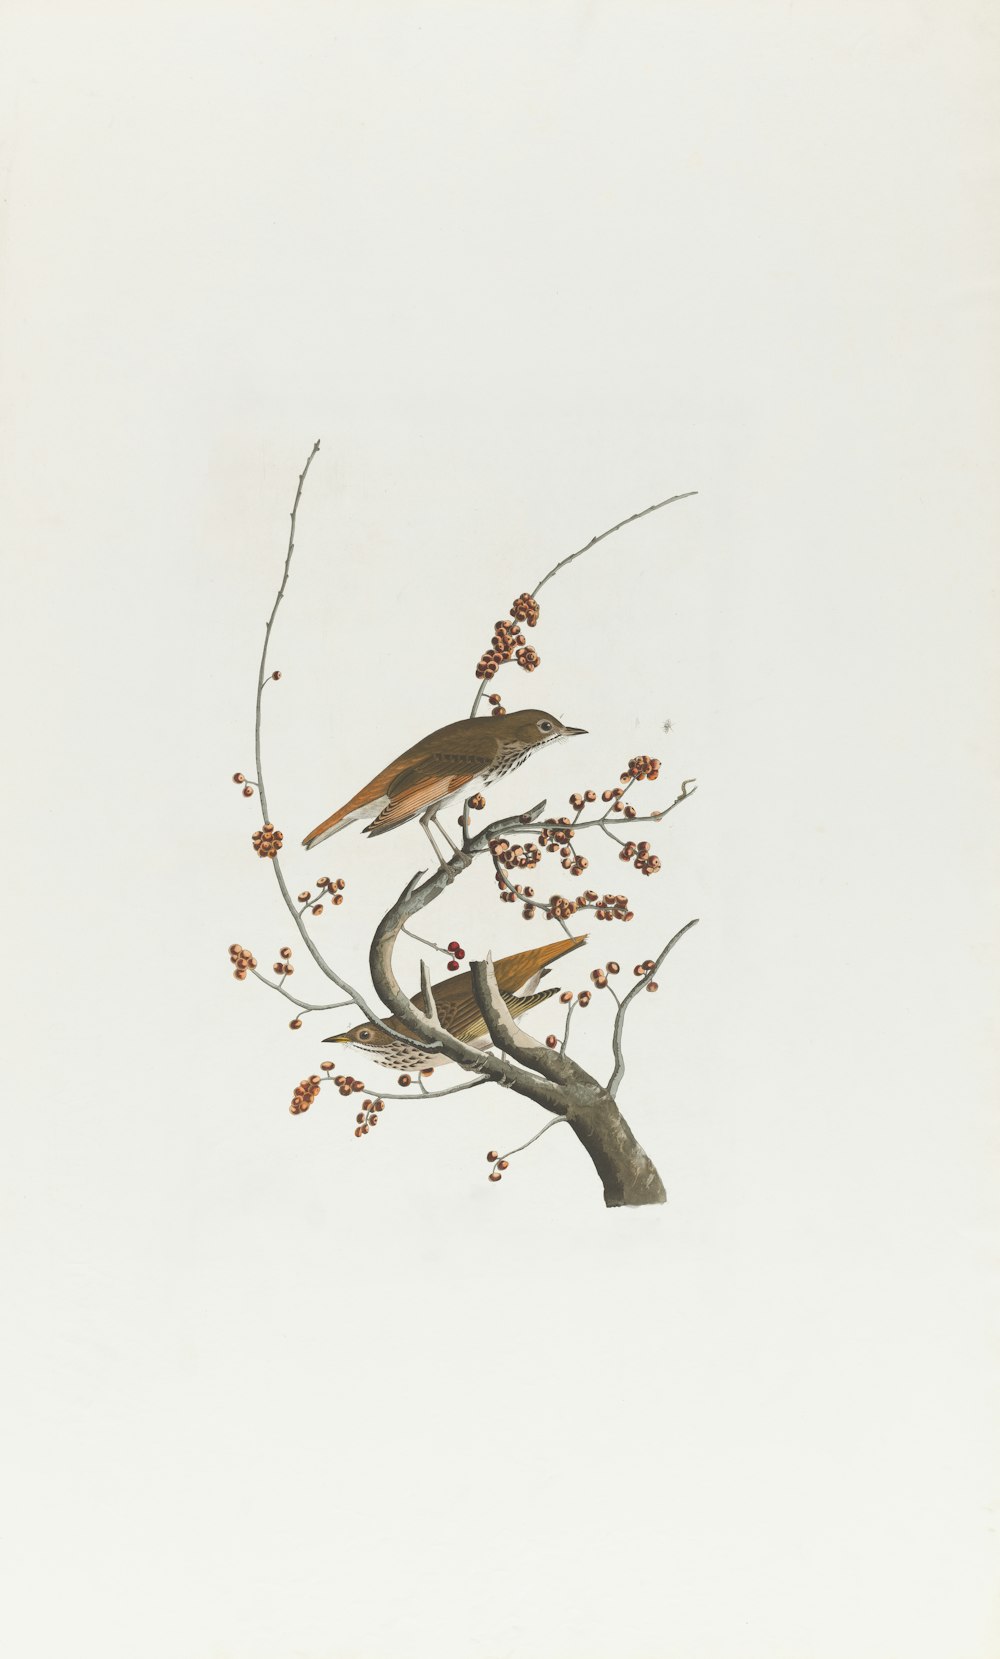 dois pássaros estão empoleirados em um galho de árvore